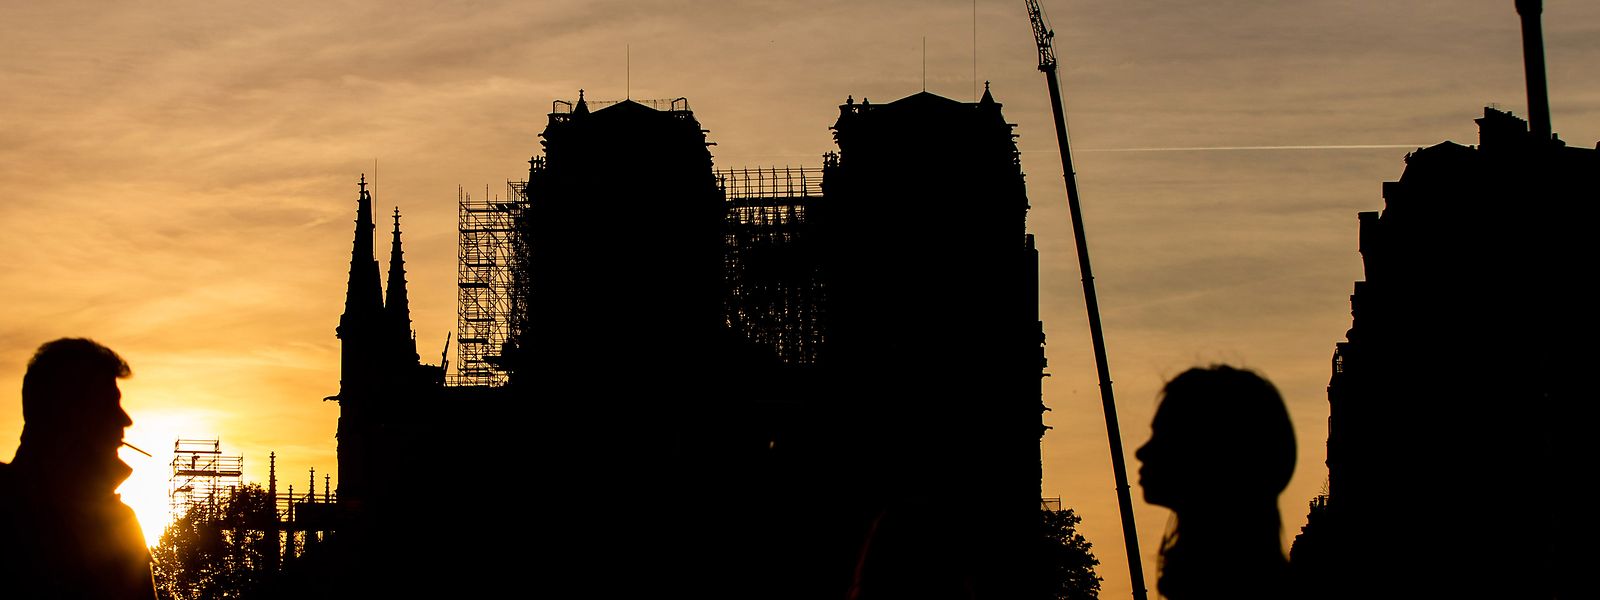 Seit dem Brand lehnen Baugerüste an der Notre-Dame Kathedrale in Paris.